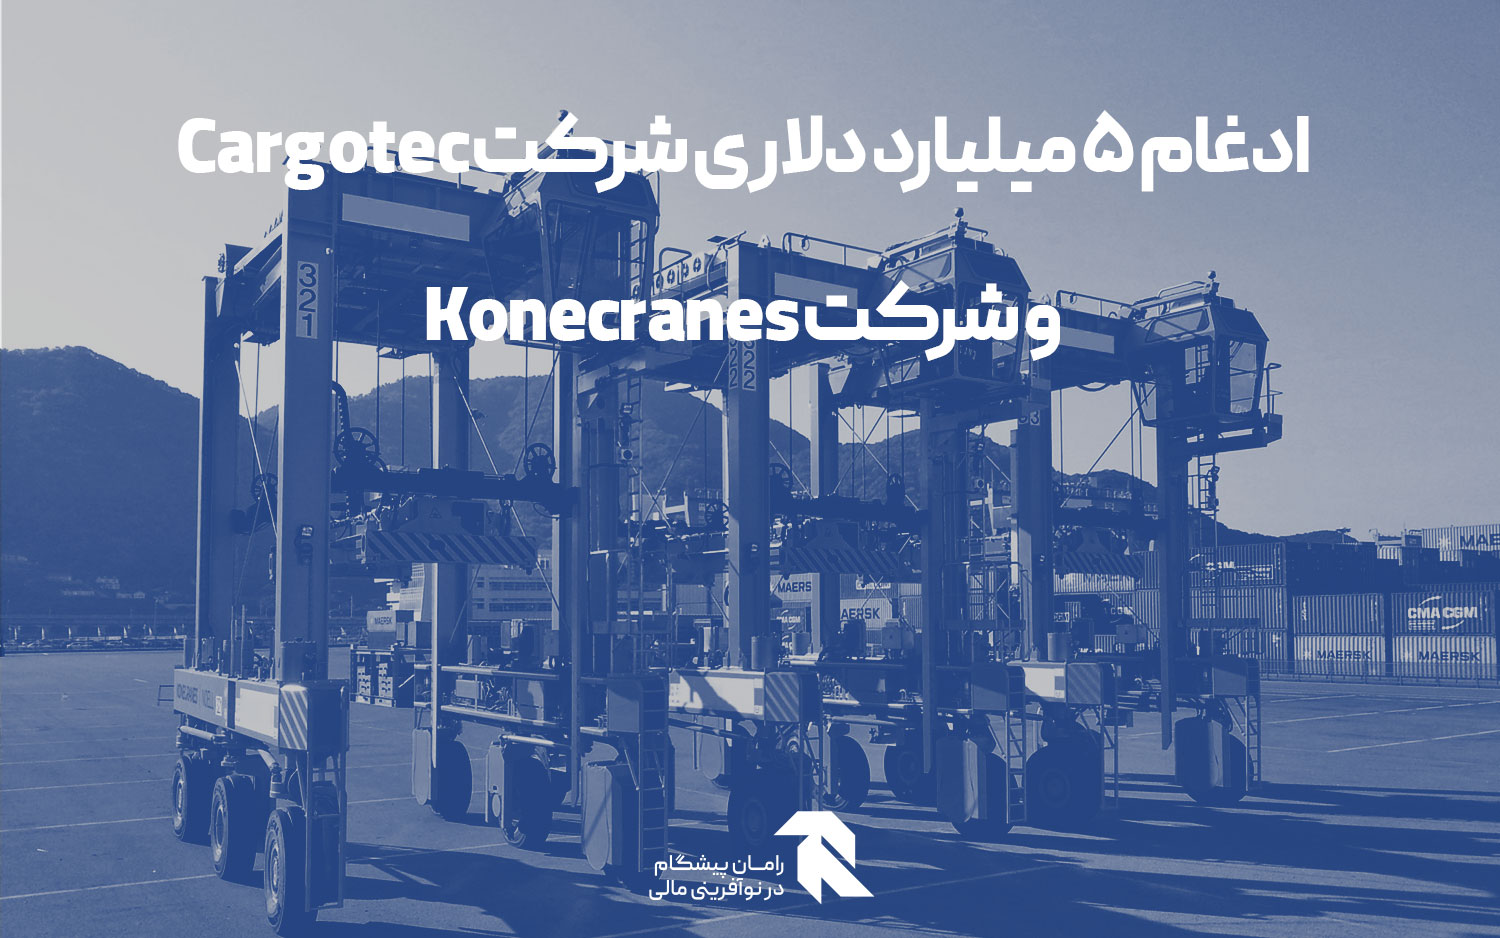 ادغام 5 میلیارد دلاری شرکت Cargotec و شرکت Konecranes